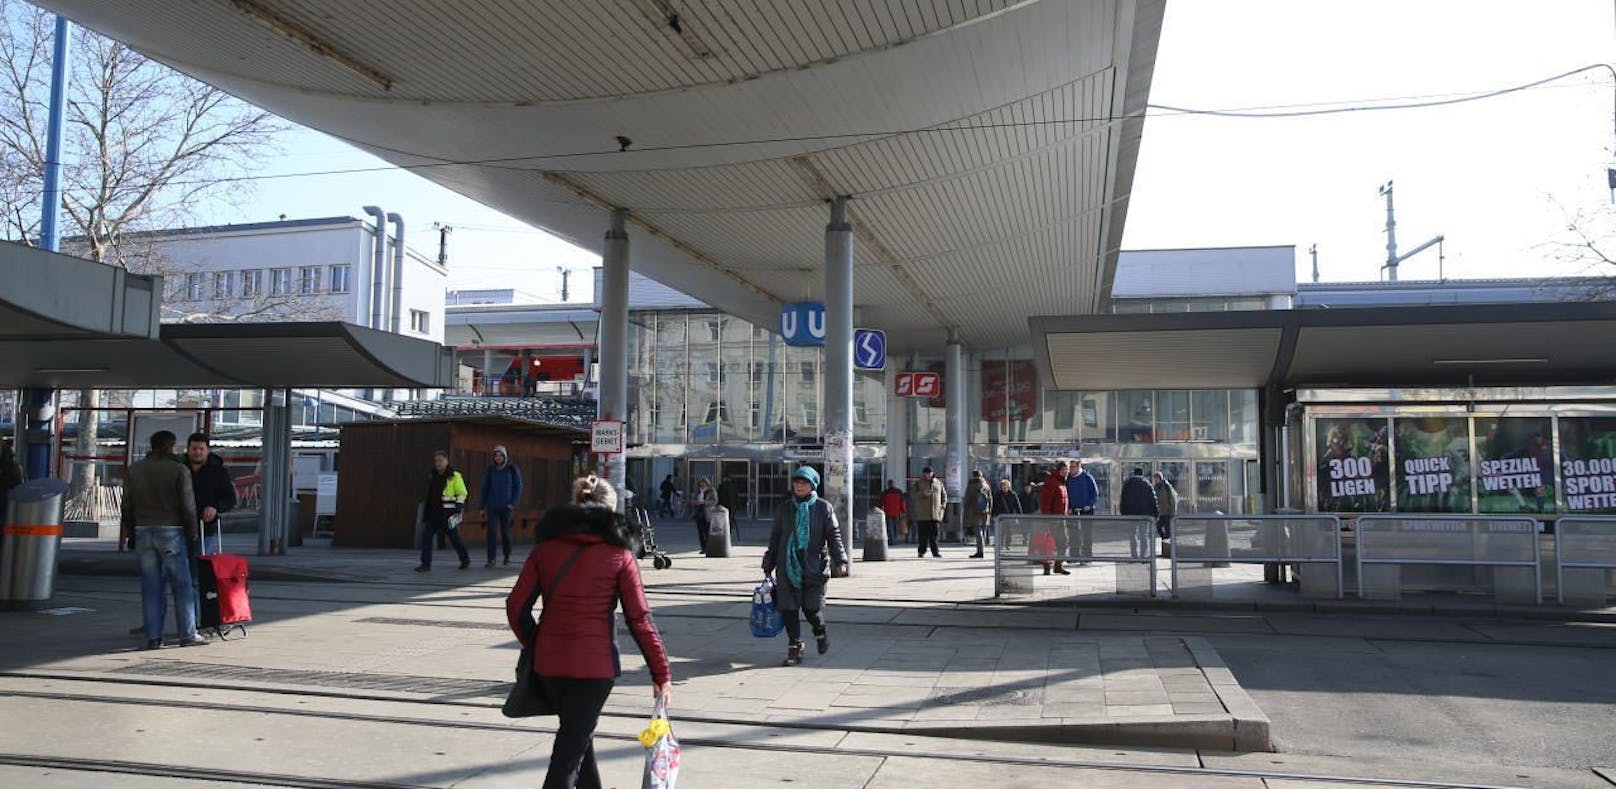 Für den Bahnhof Floridsdorf wurde ähnlich wie am Praterstern ein Alkoholverbot beschlossen.